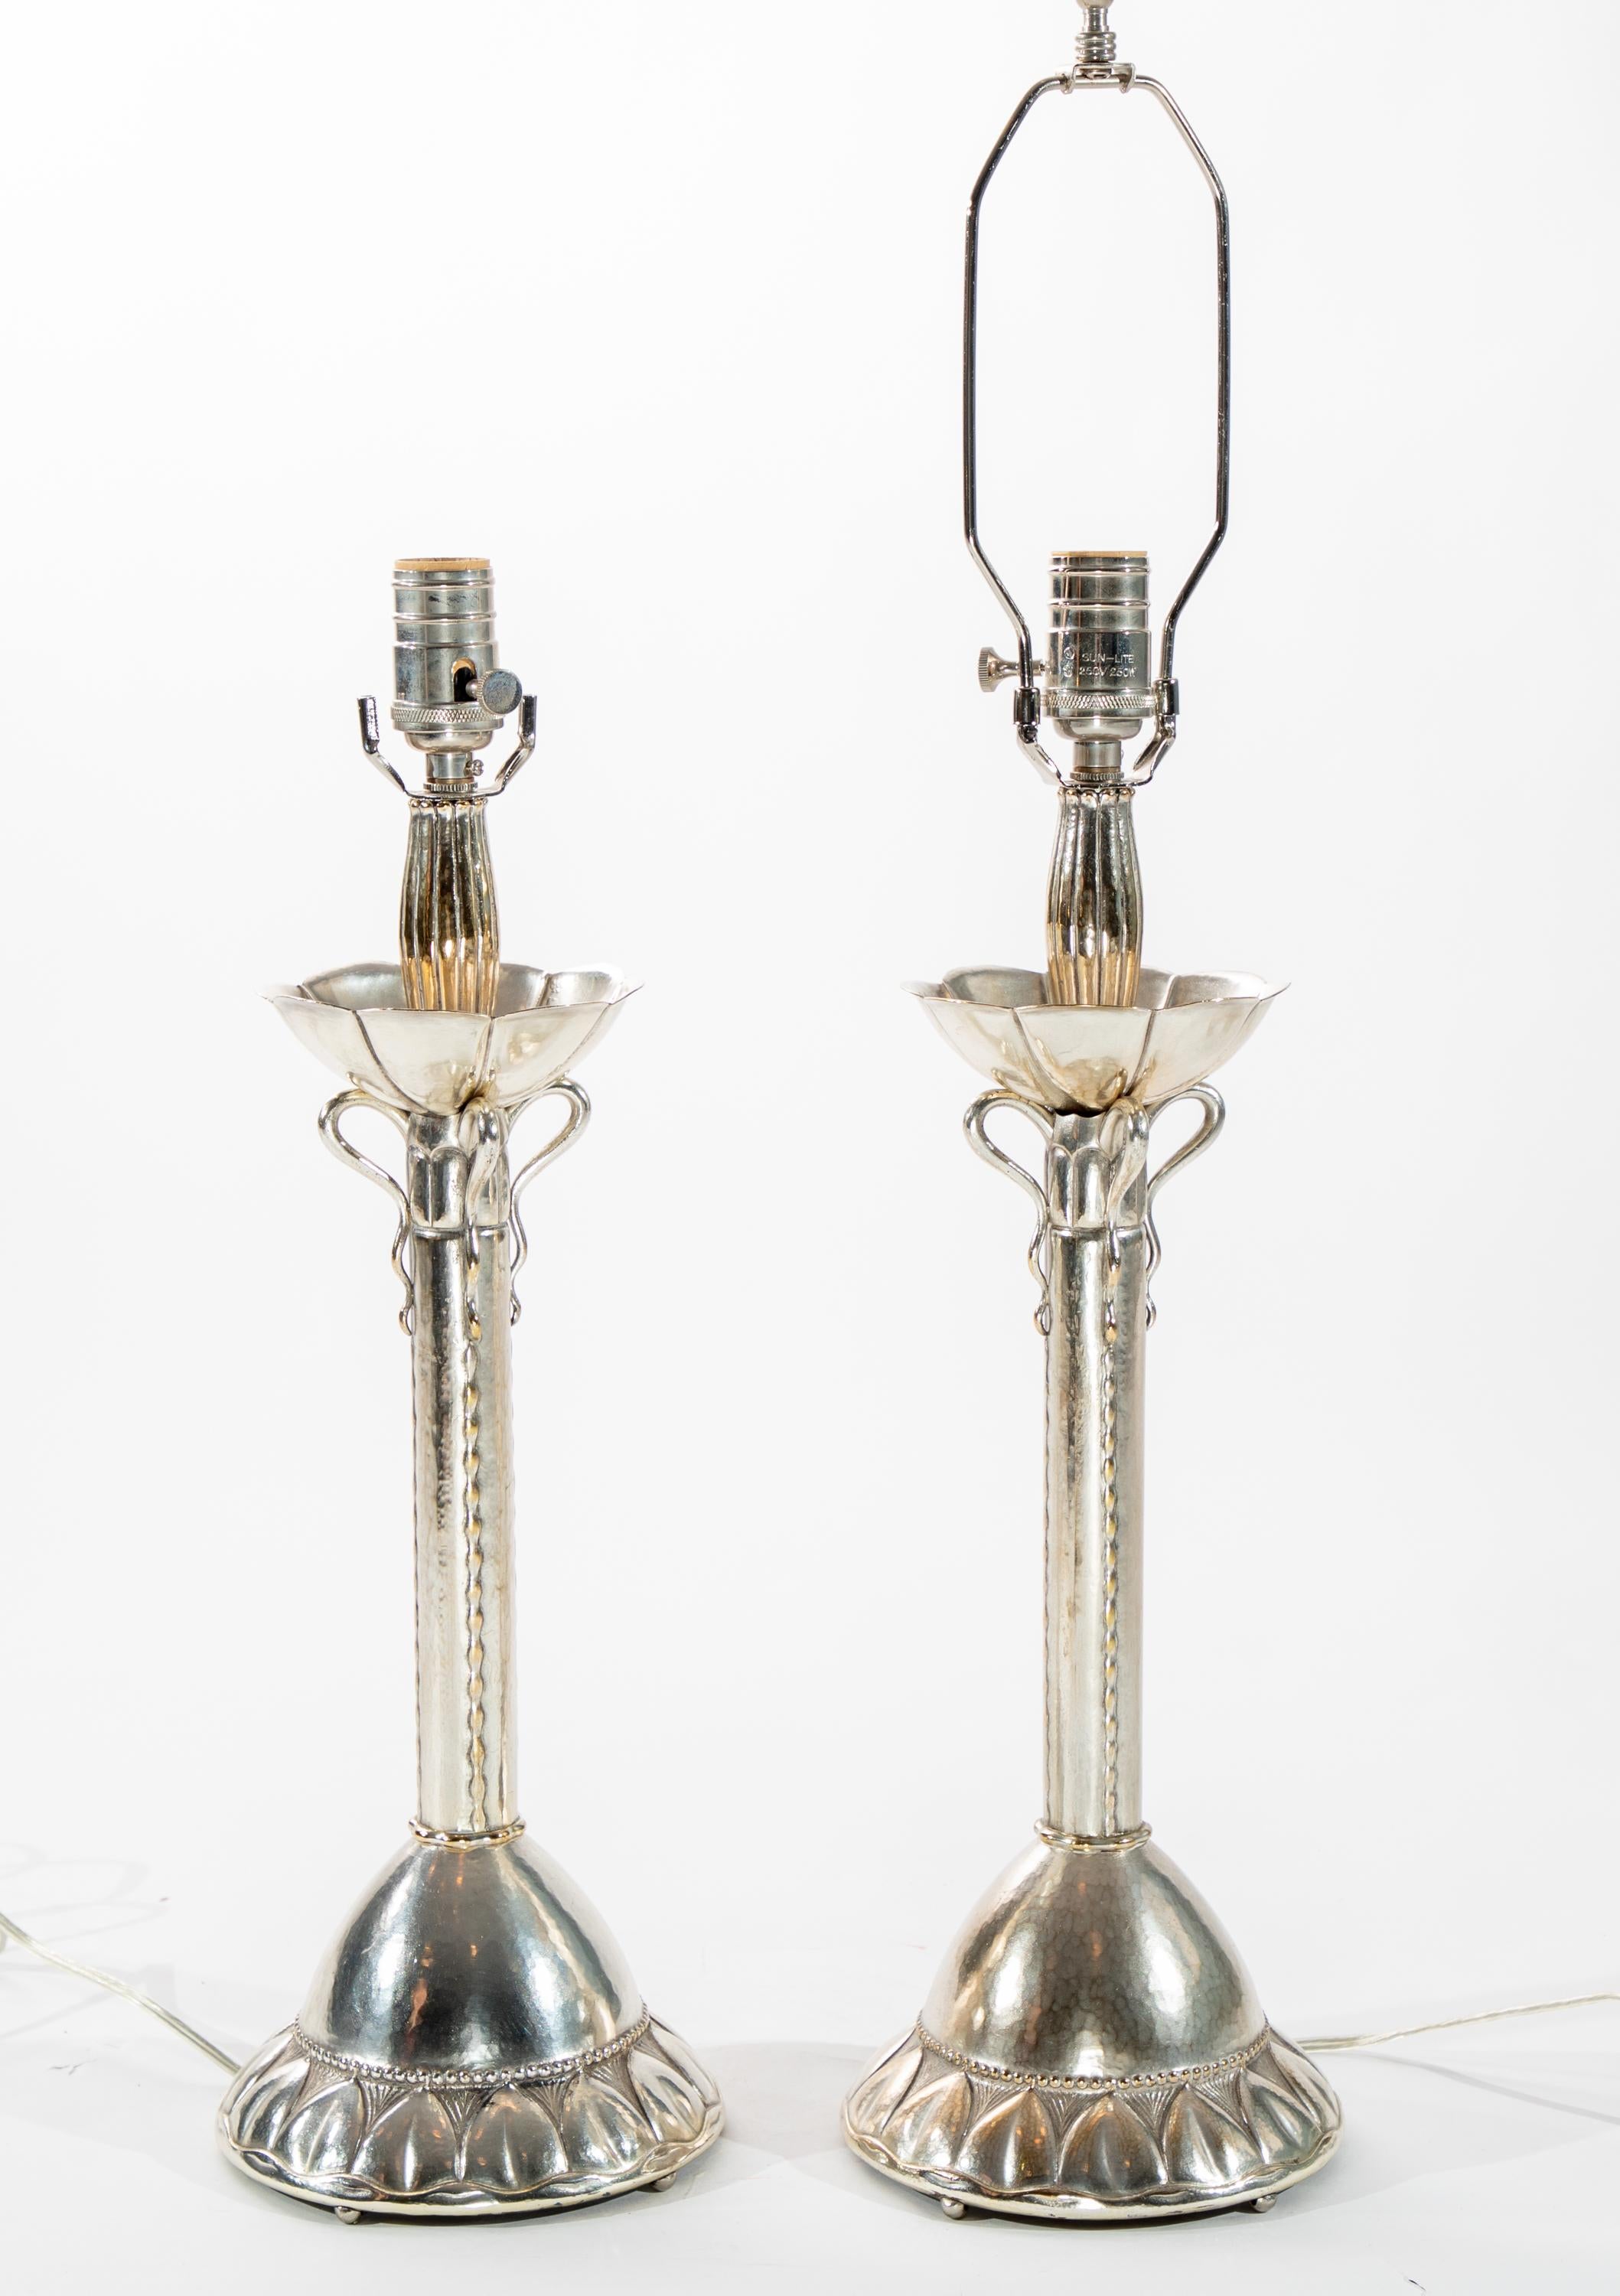 Paire de lampes de table du début du 20e siècle en métal martelé et argenté.  Origine allemande

Recâblage récent.
